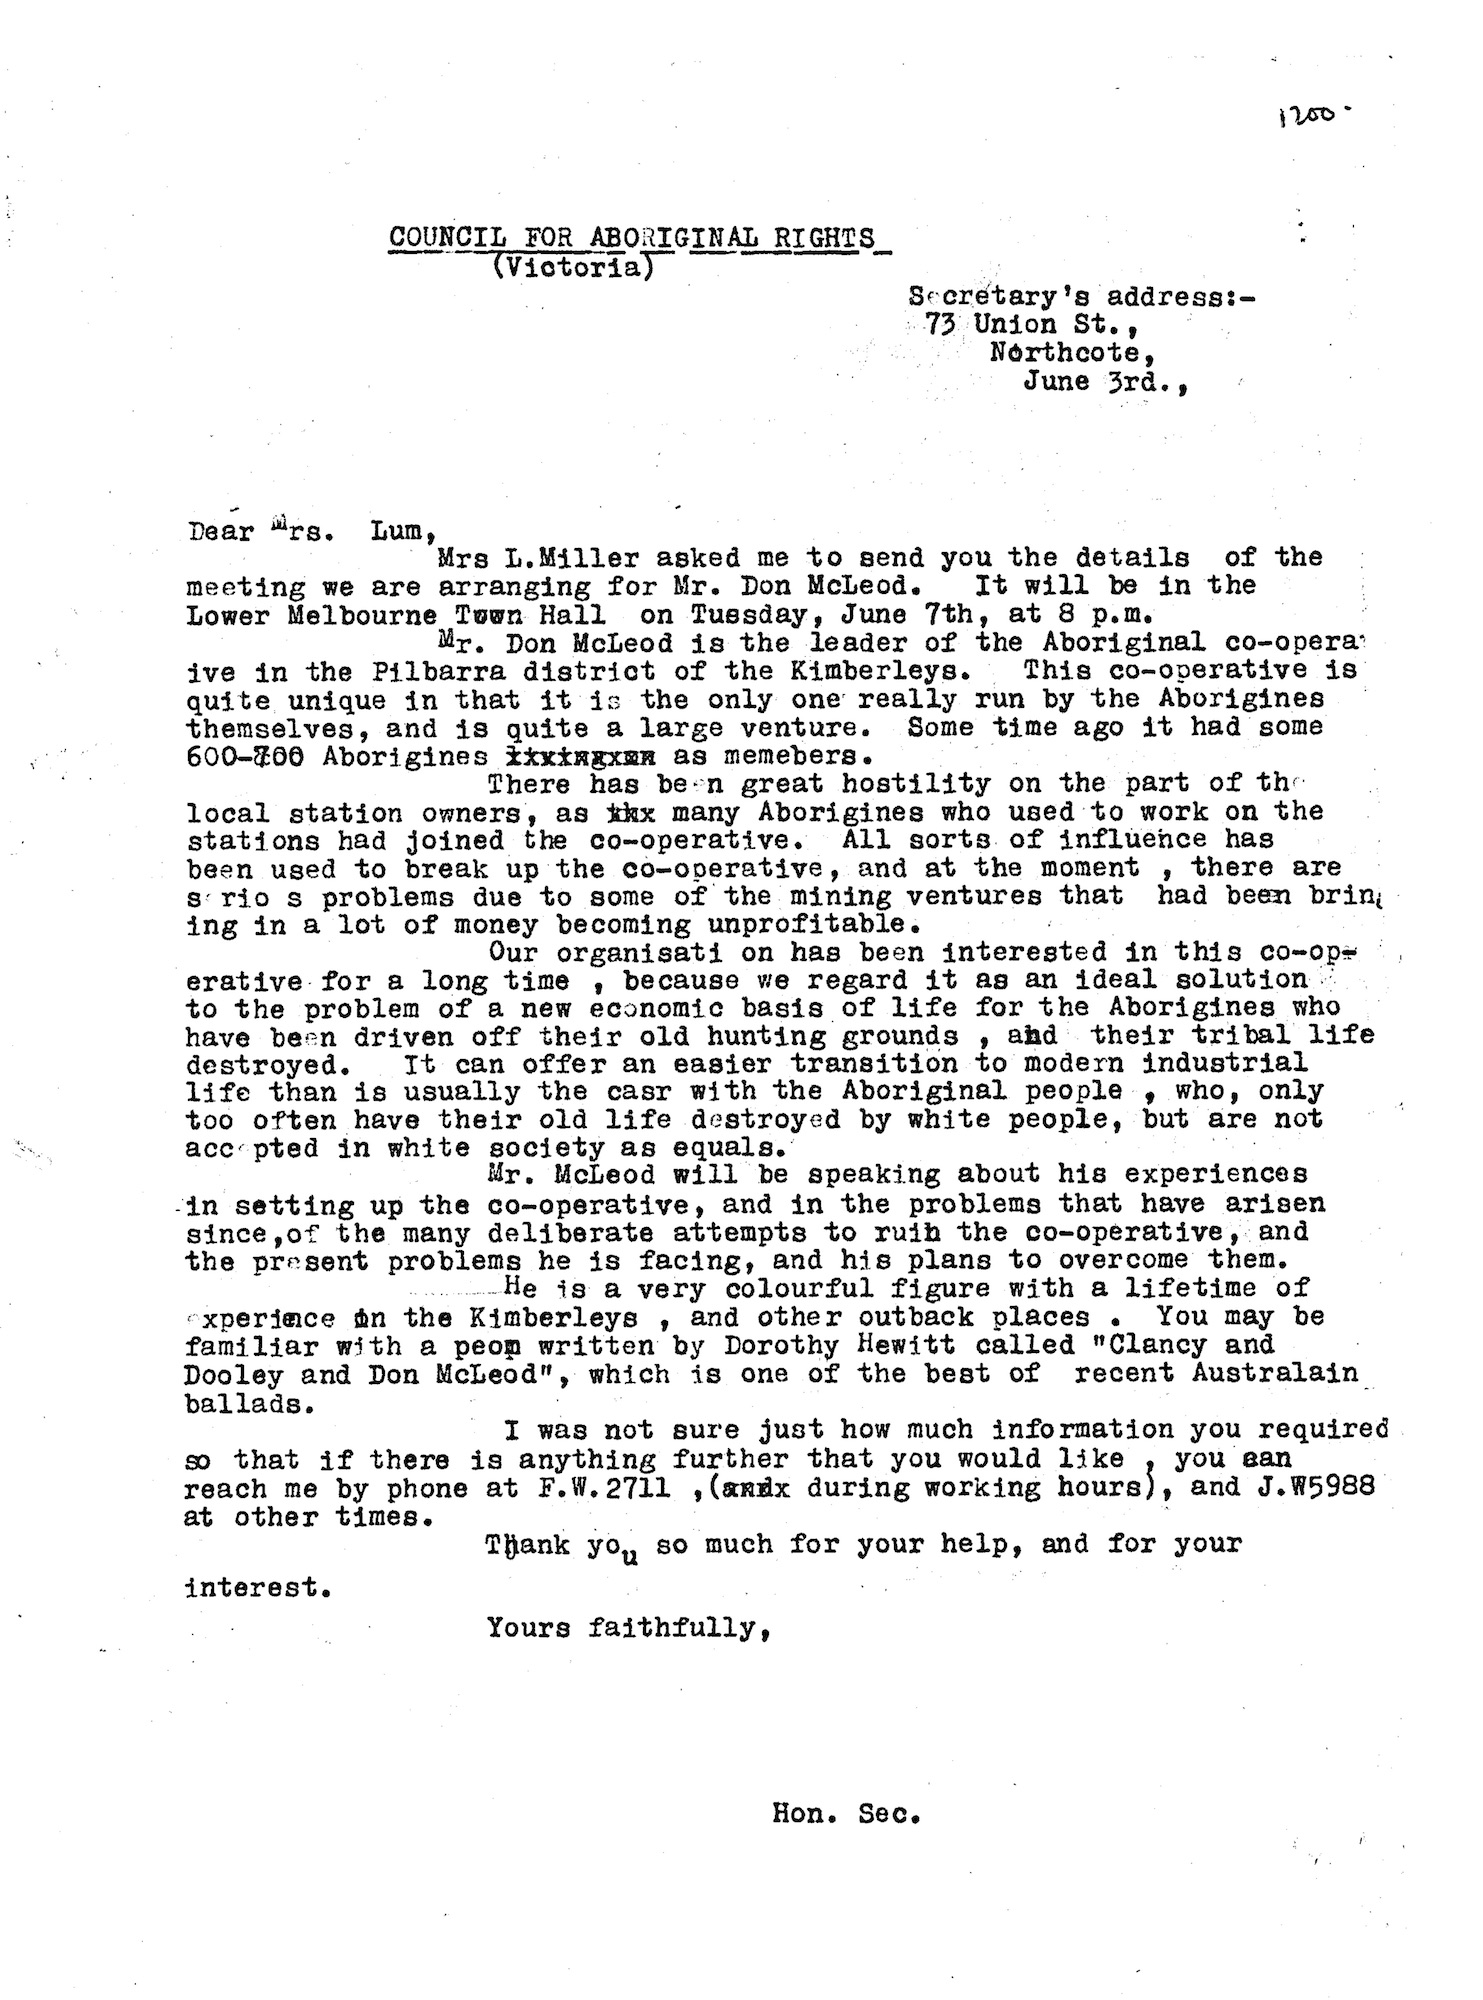 Shirley Andrews to Mrs. Lum, 3 June 1955